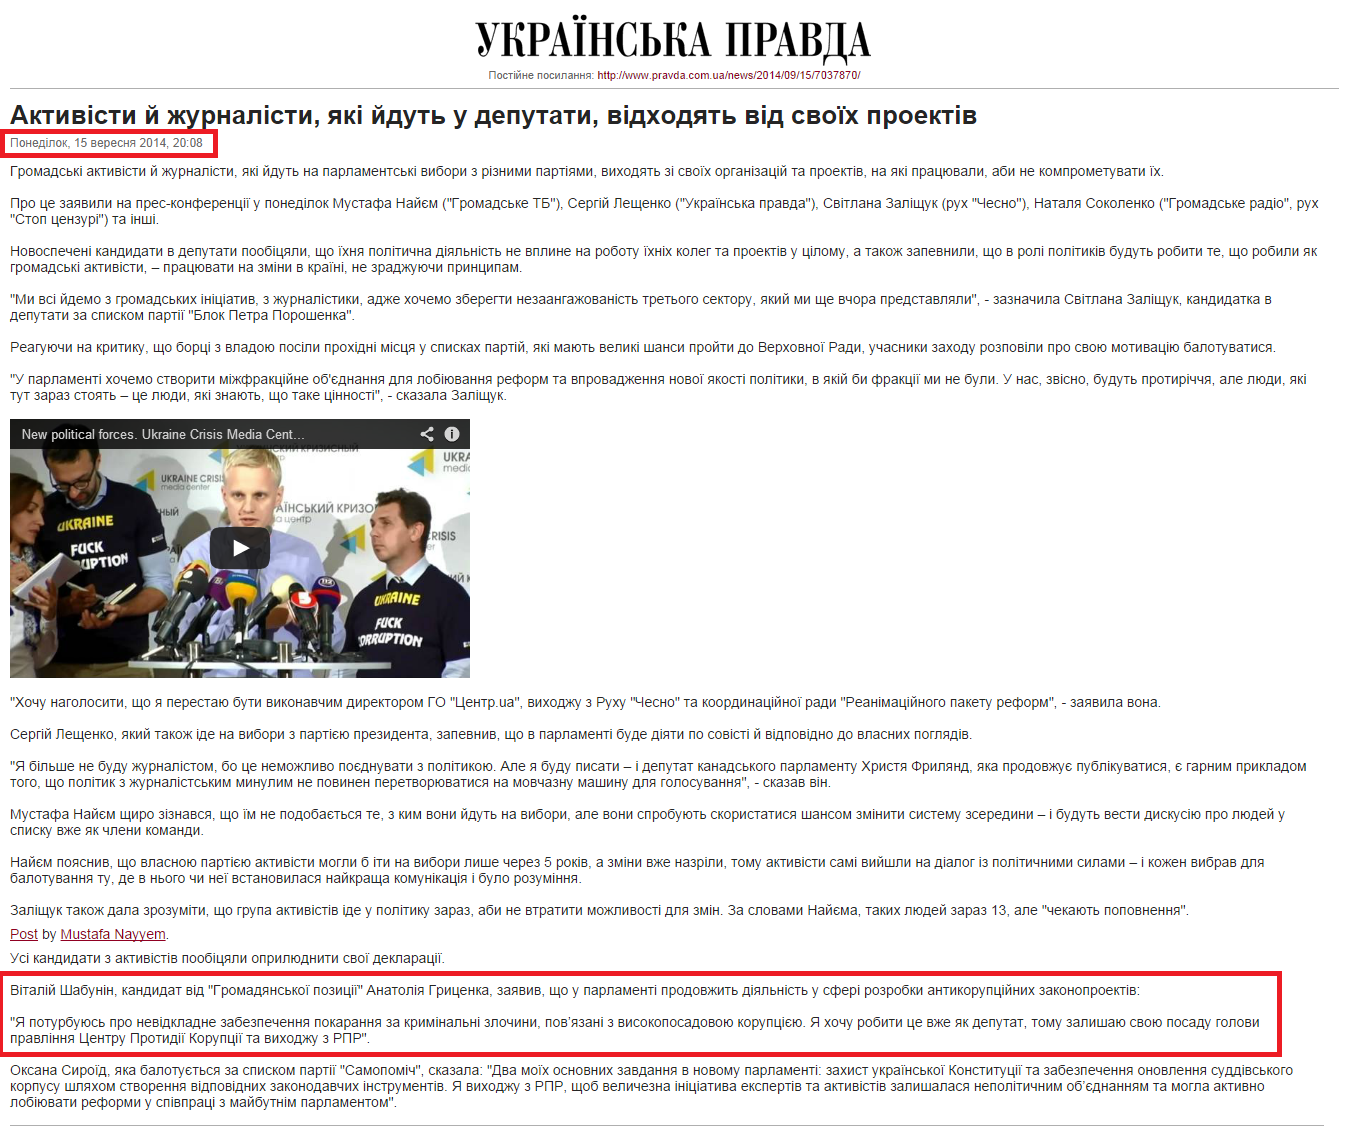 http://www.pravda.com.ua/news/2014/09/15/7037870/view_print/